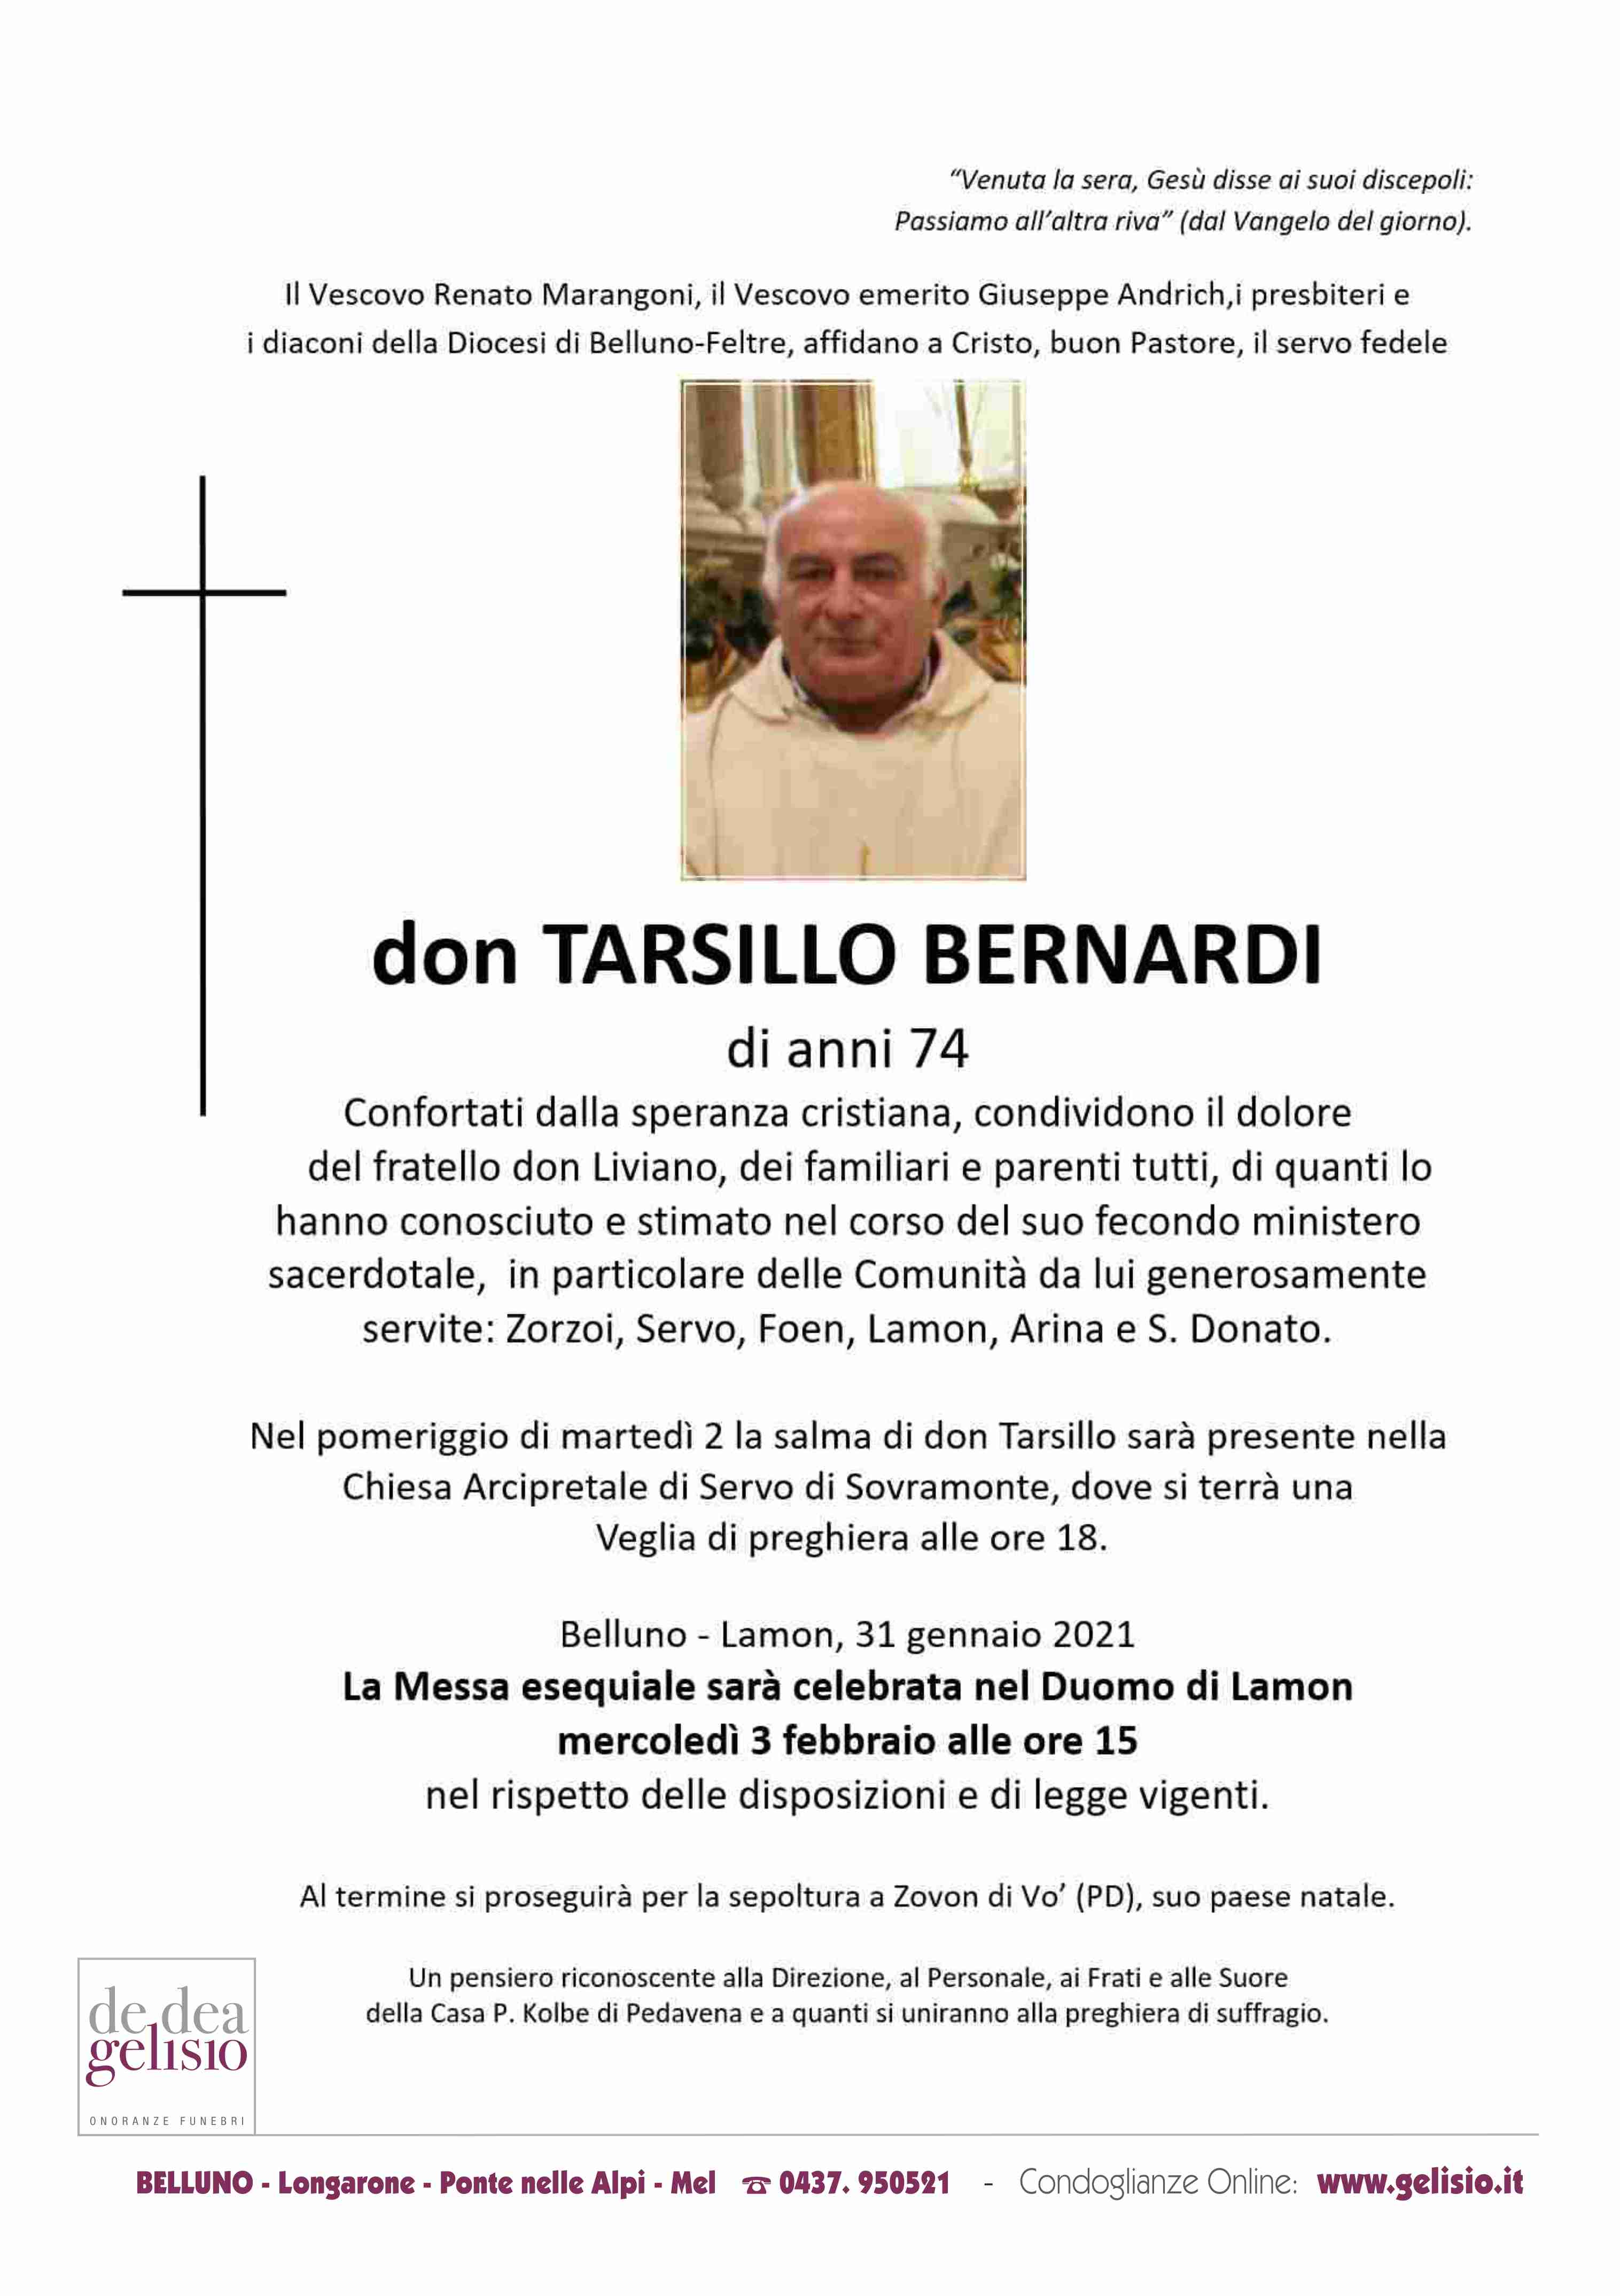 Don Tarsillo Bernardi